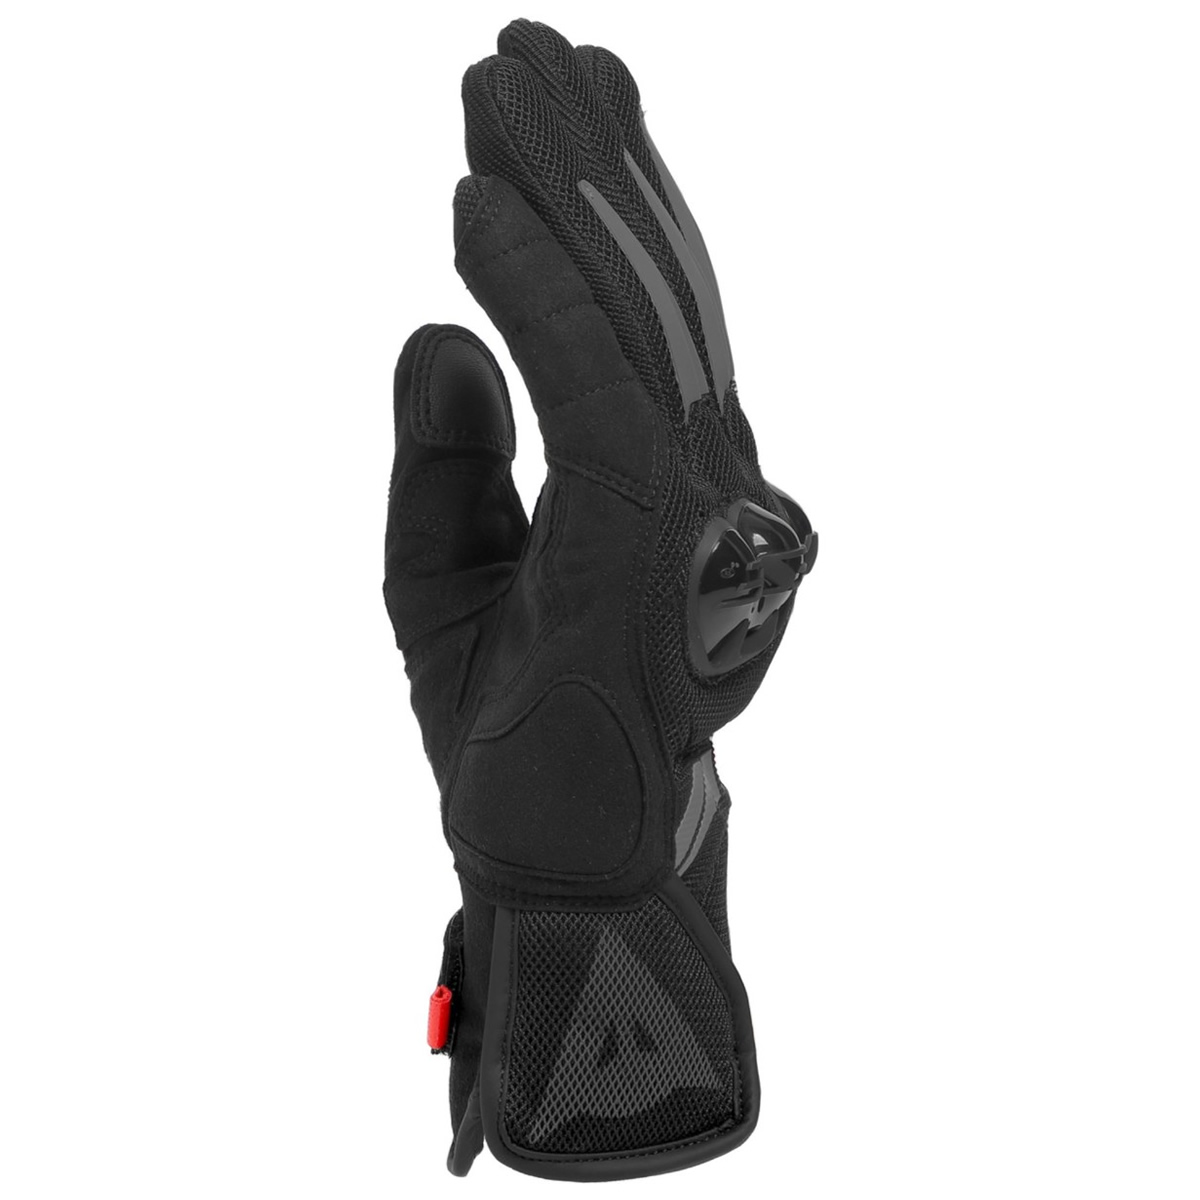 Dainese Handschuhe Mig 3 Air Tex, schwarz